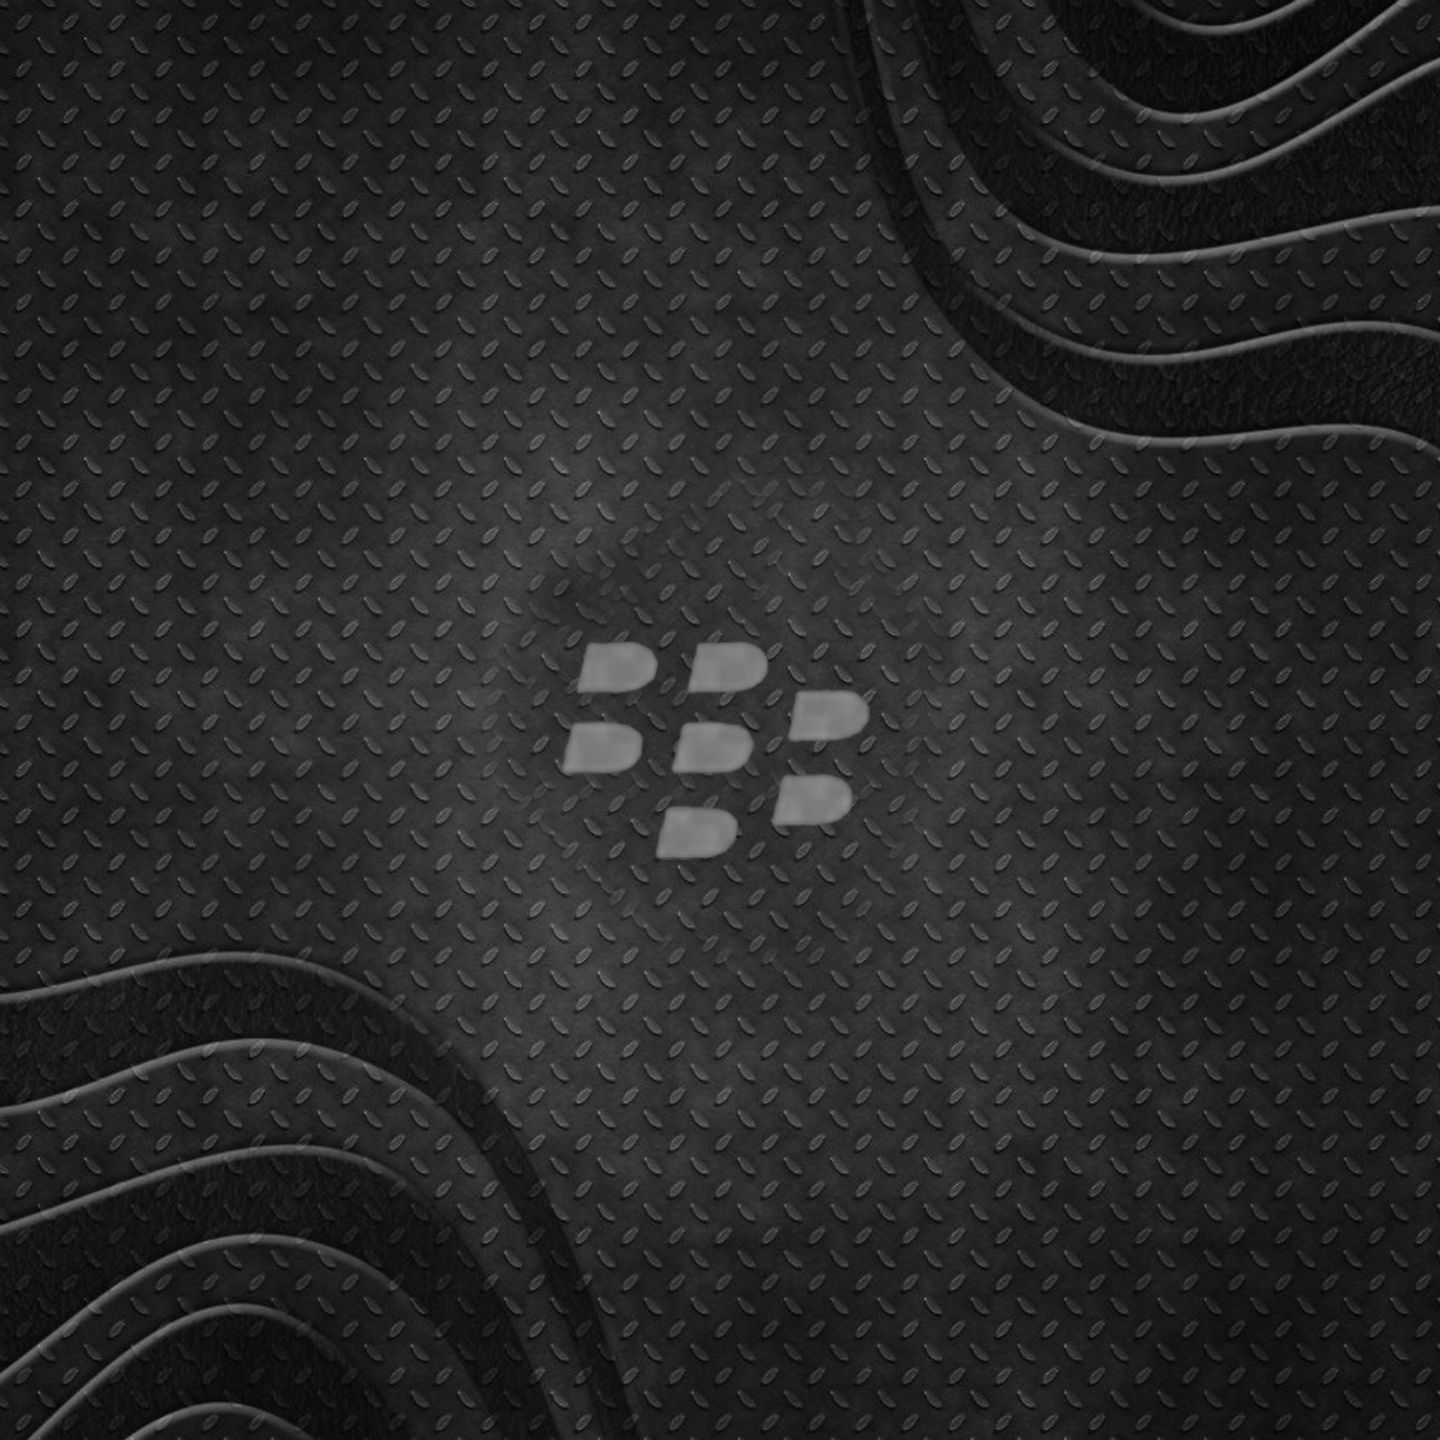 BlackBerry Passport Background